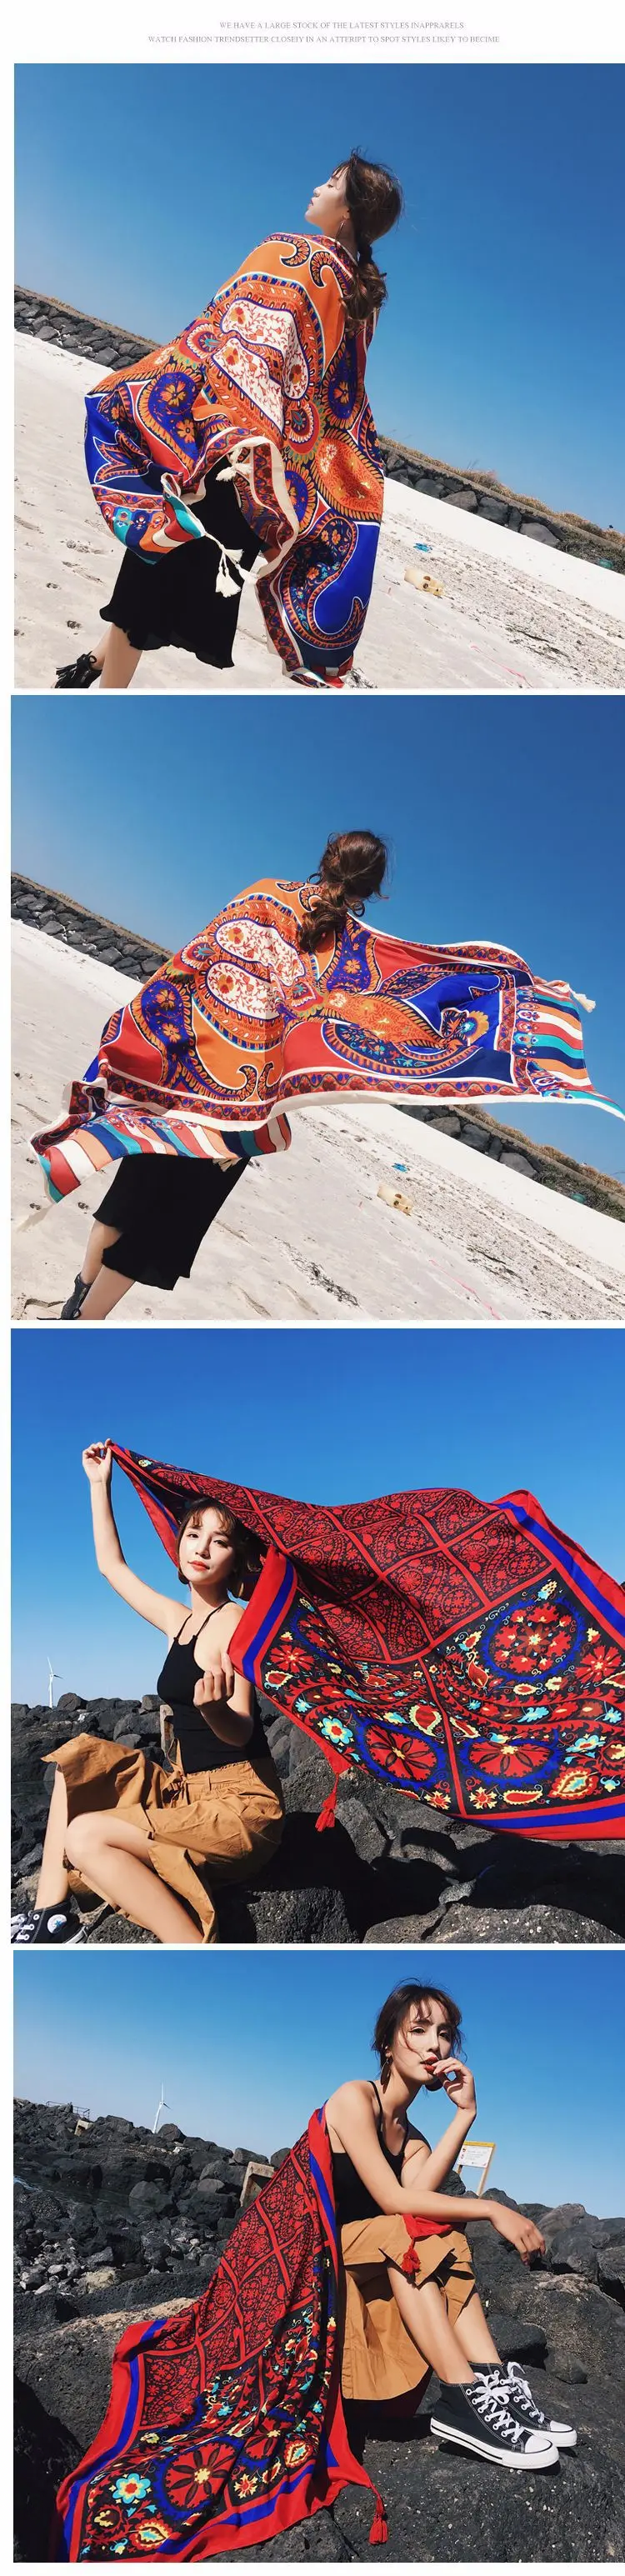 Богемный этнический женский туристический фотографировал пляжное полотенце различные надувные женский шаль лечение Cover Up Купание